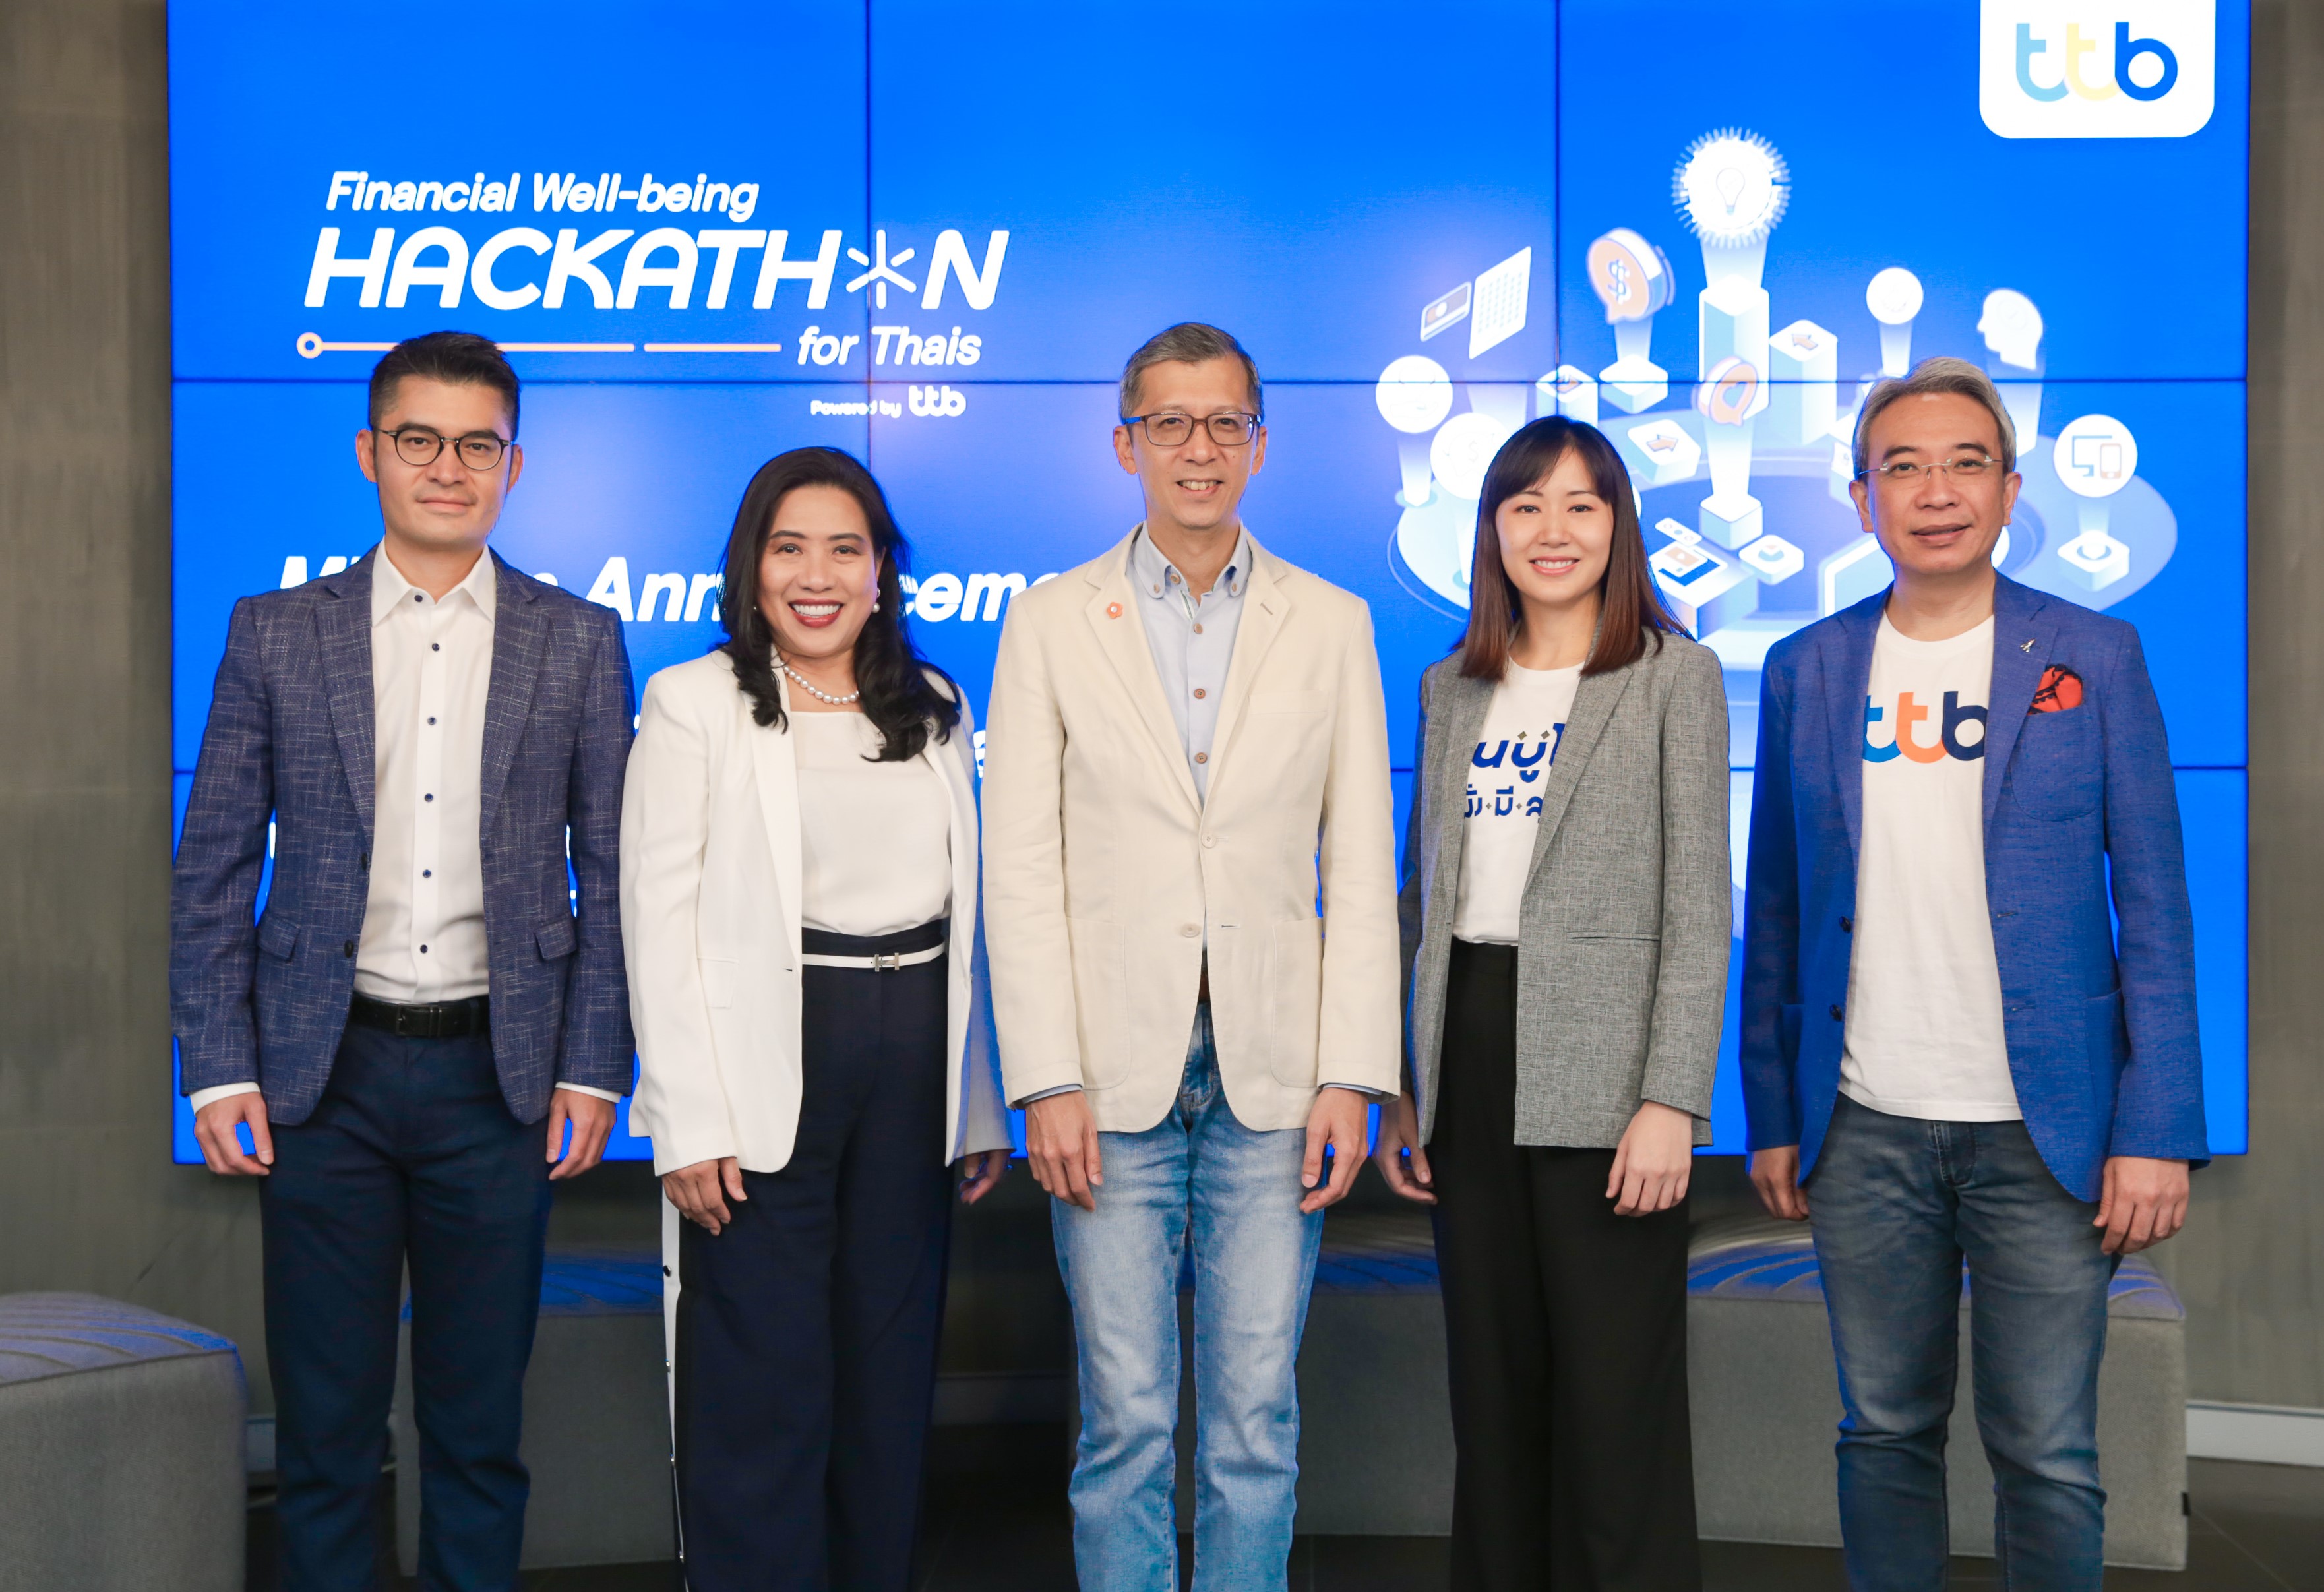 ทีเอ็มบีธนชาต ประกาศ Mission งาน “Financial Well-being Hackathon for Thais” ชวนคนรุ่นใหม่ ใช้พลัง Tech และ Data สร้างโซลูชันทางการเงินใหม่แก่คนไทย